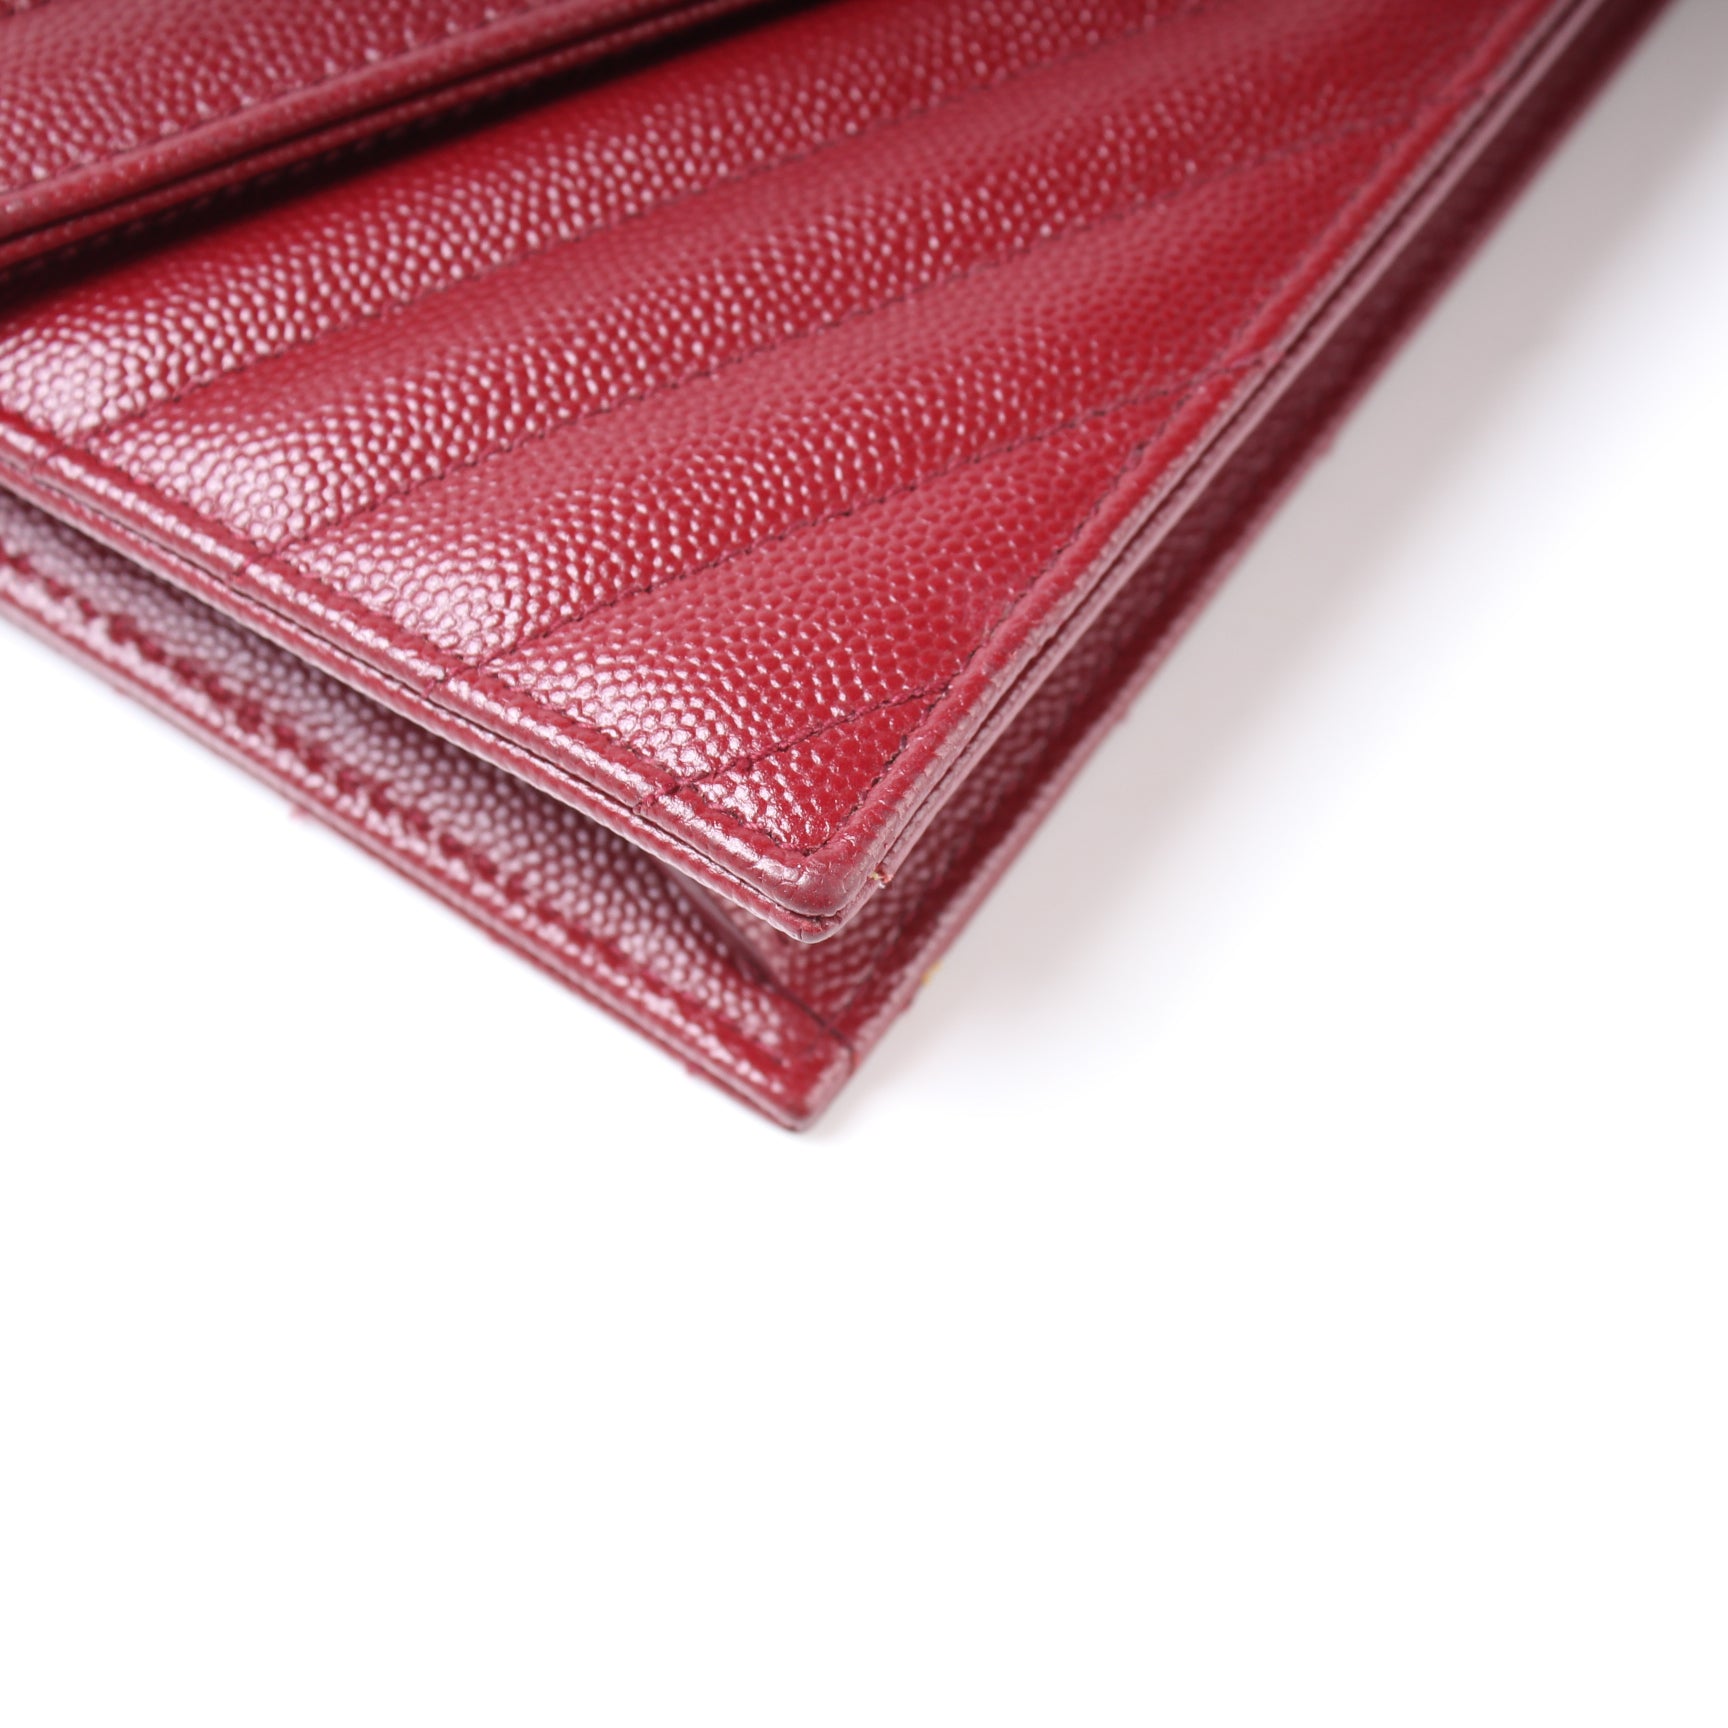 Envelope Chain Wallet 393953 – Keeks Designer Handbags